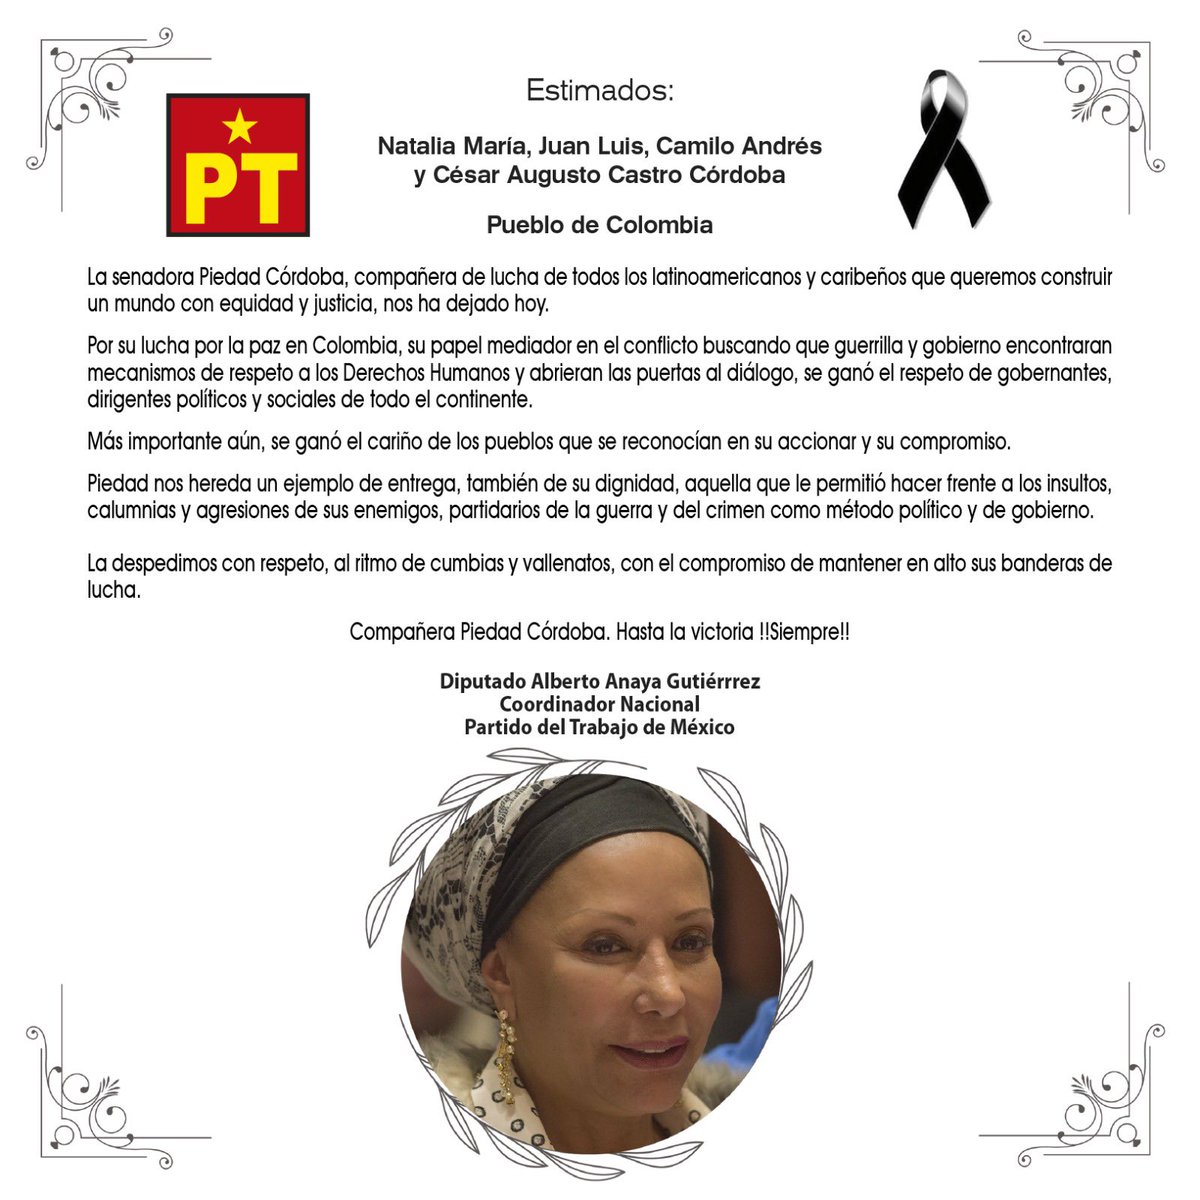 Siento mucho el fallecimiento de la Senadora Piedad Córdoba, compañera de lucha por la justicia y paz de los pueblos latinoamericanos. Su ejemplo de trabajo y entrega seguirá siendo un referente para Colombia y todo el continente.